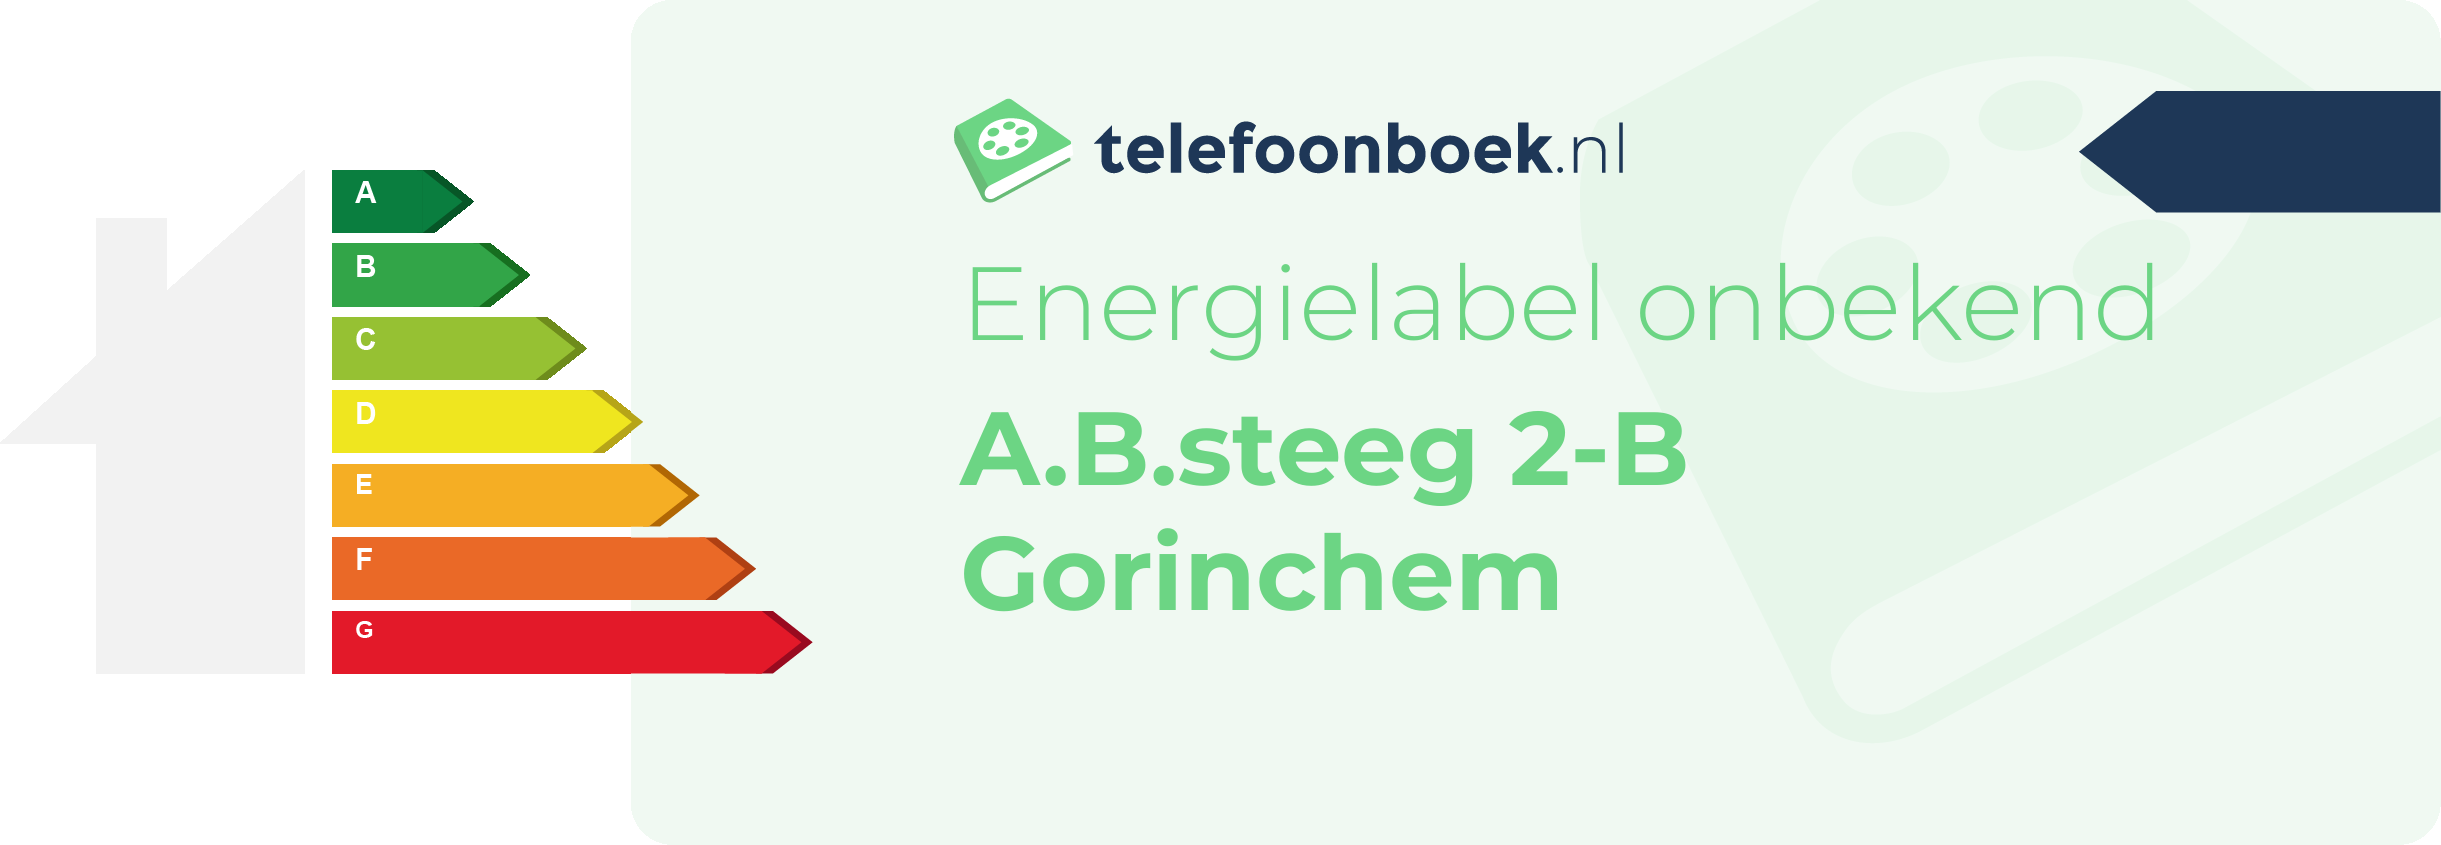 Energielabel A.B.steeg 2-B Gorinchem